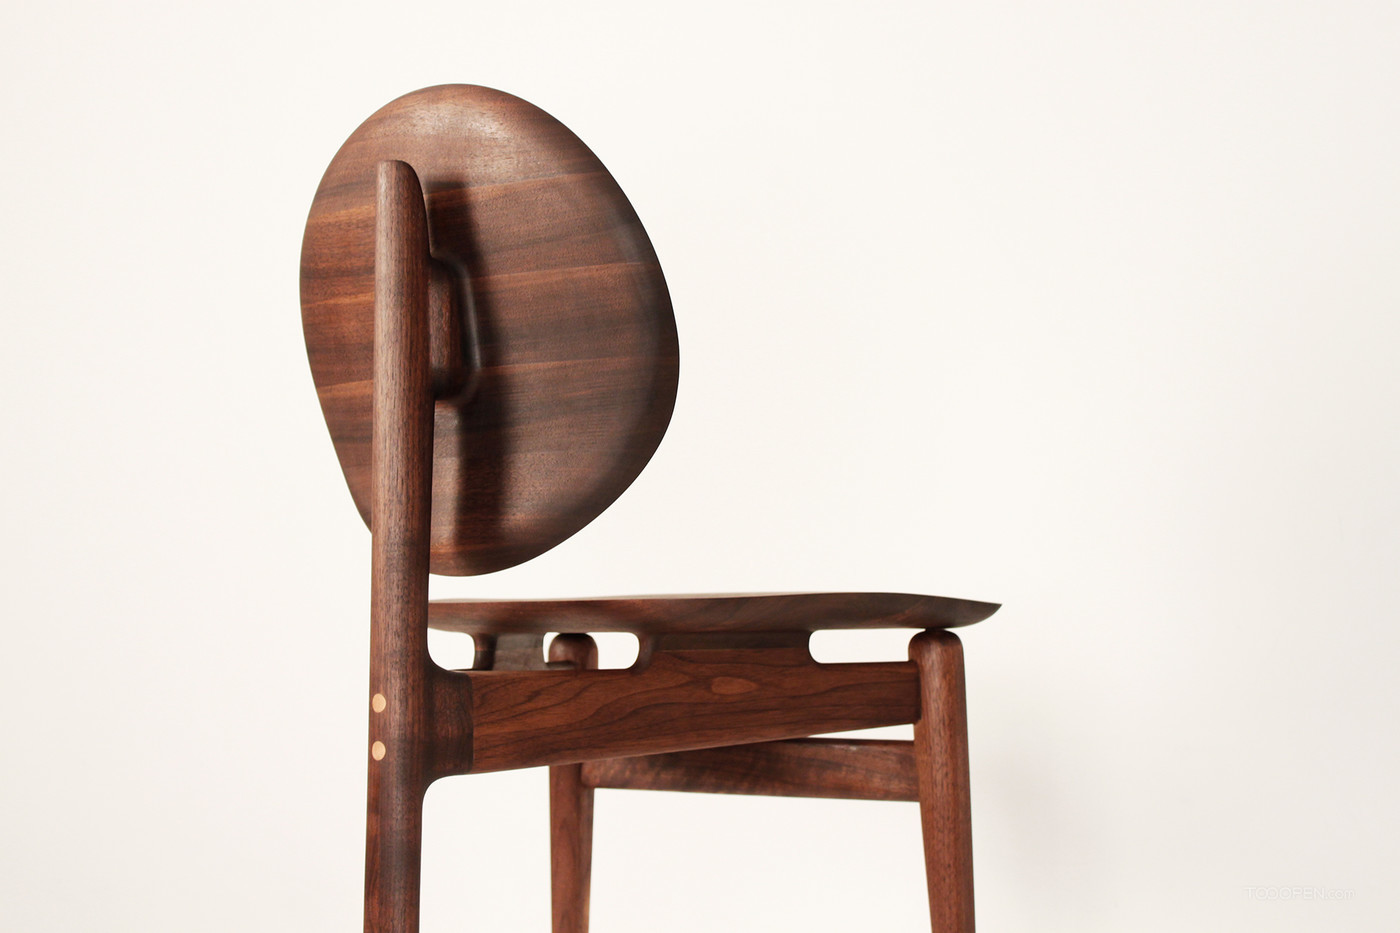 国外创意胡桃木椅家具产品设计欣赏-06